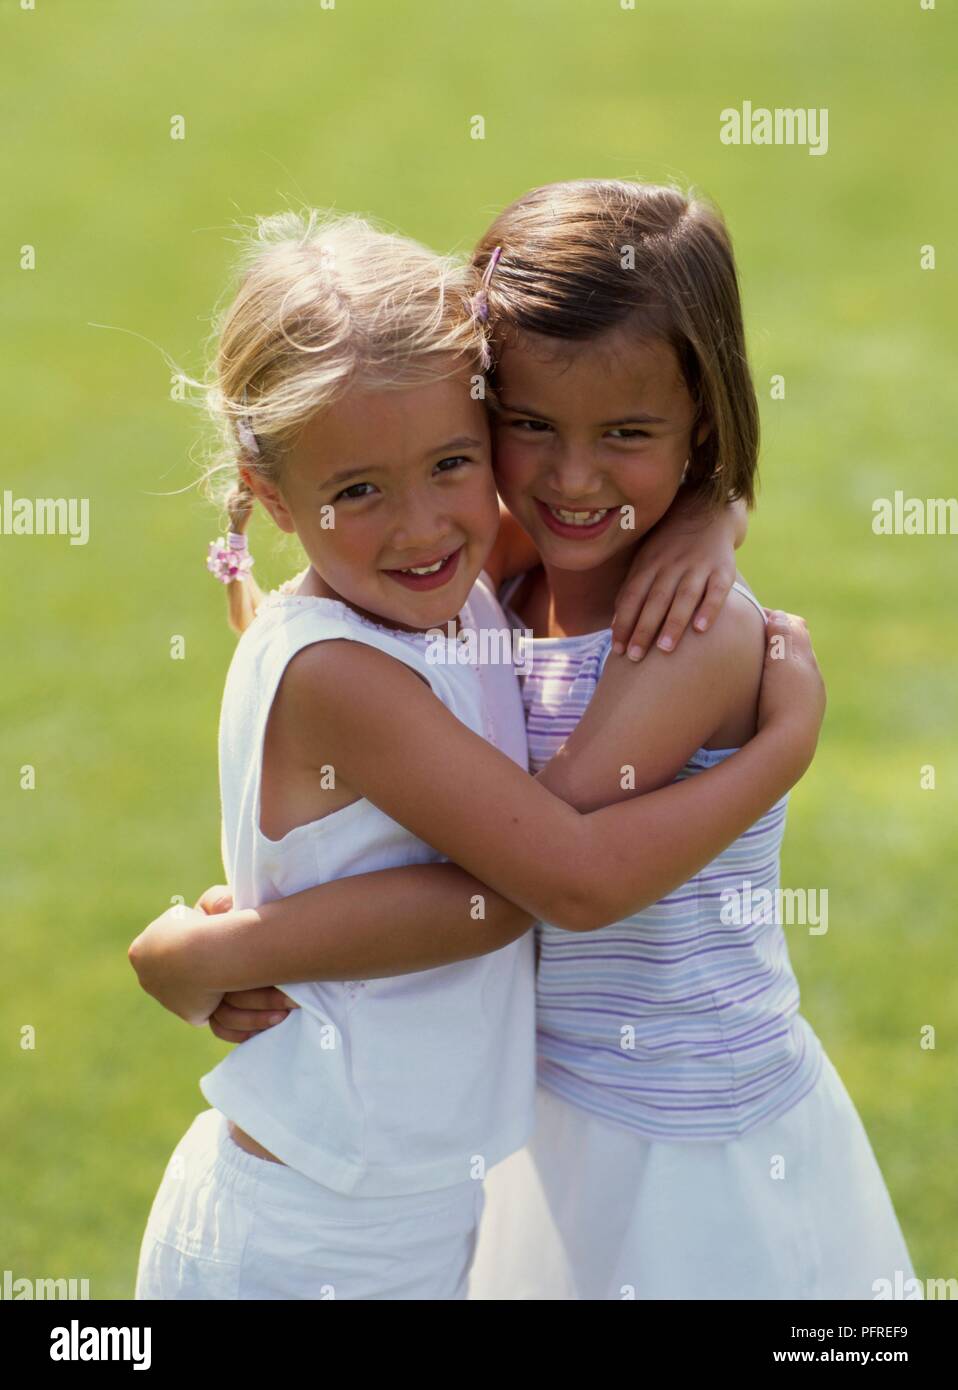 Zwei Mädchen im Tennis outfit Umarmen Stockfoto